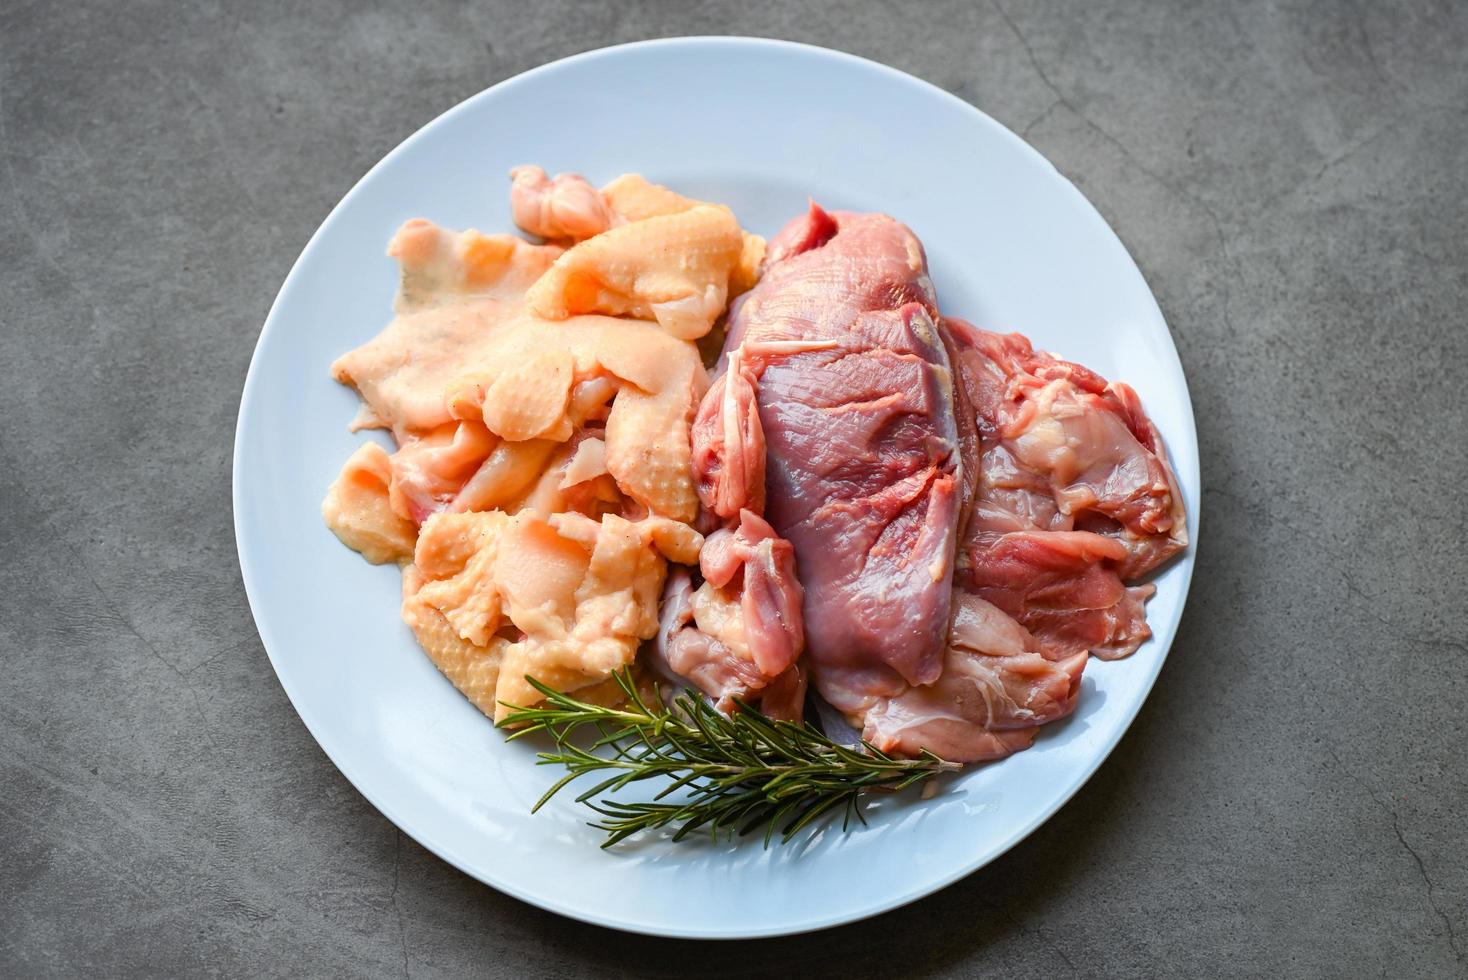 magret de canard cru et peau de canard au romarin aux herbes à cuire sur assiette, viande de canard fraîche pour la nourriture photo